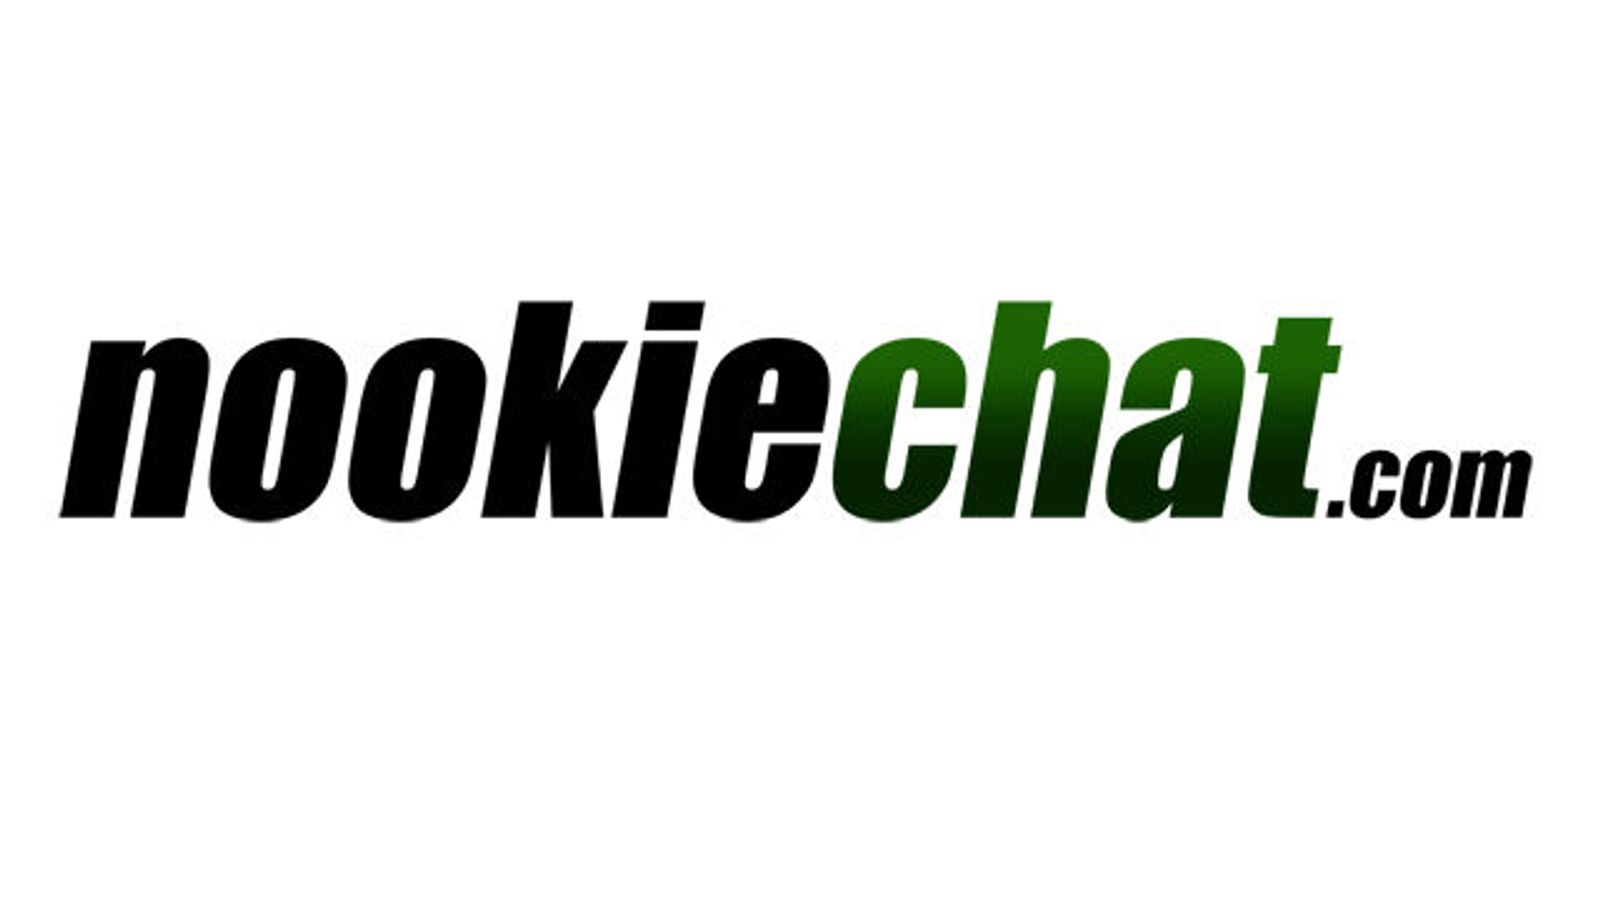 New Webcam Service NookieChat.com Launches